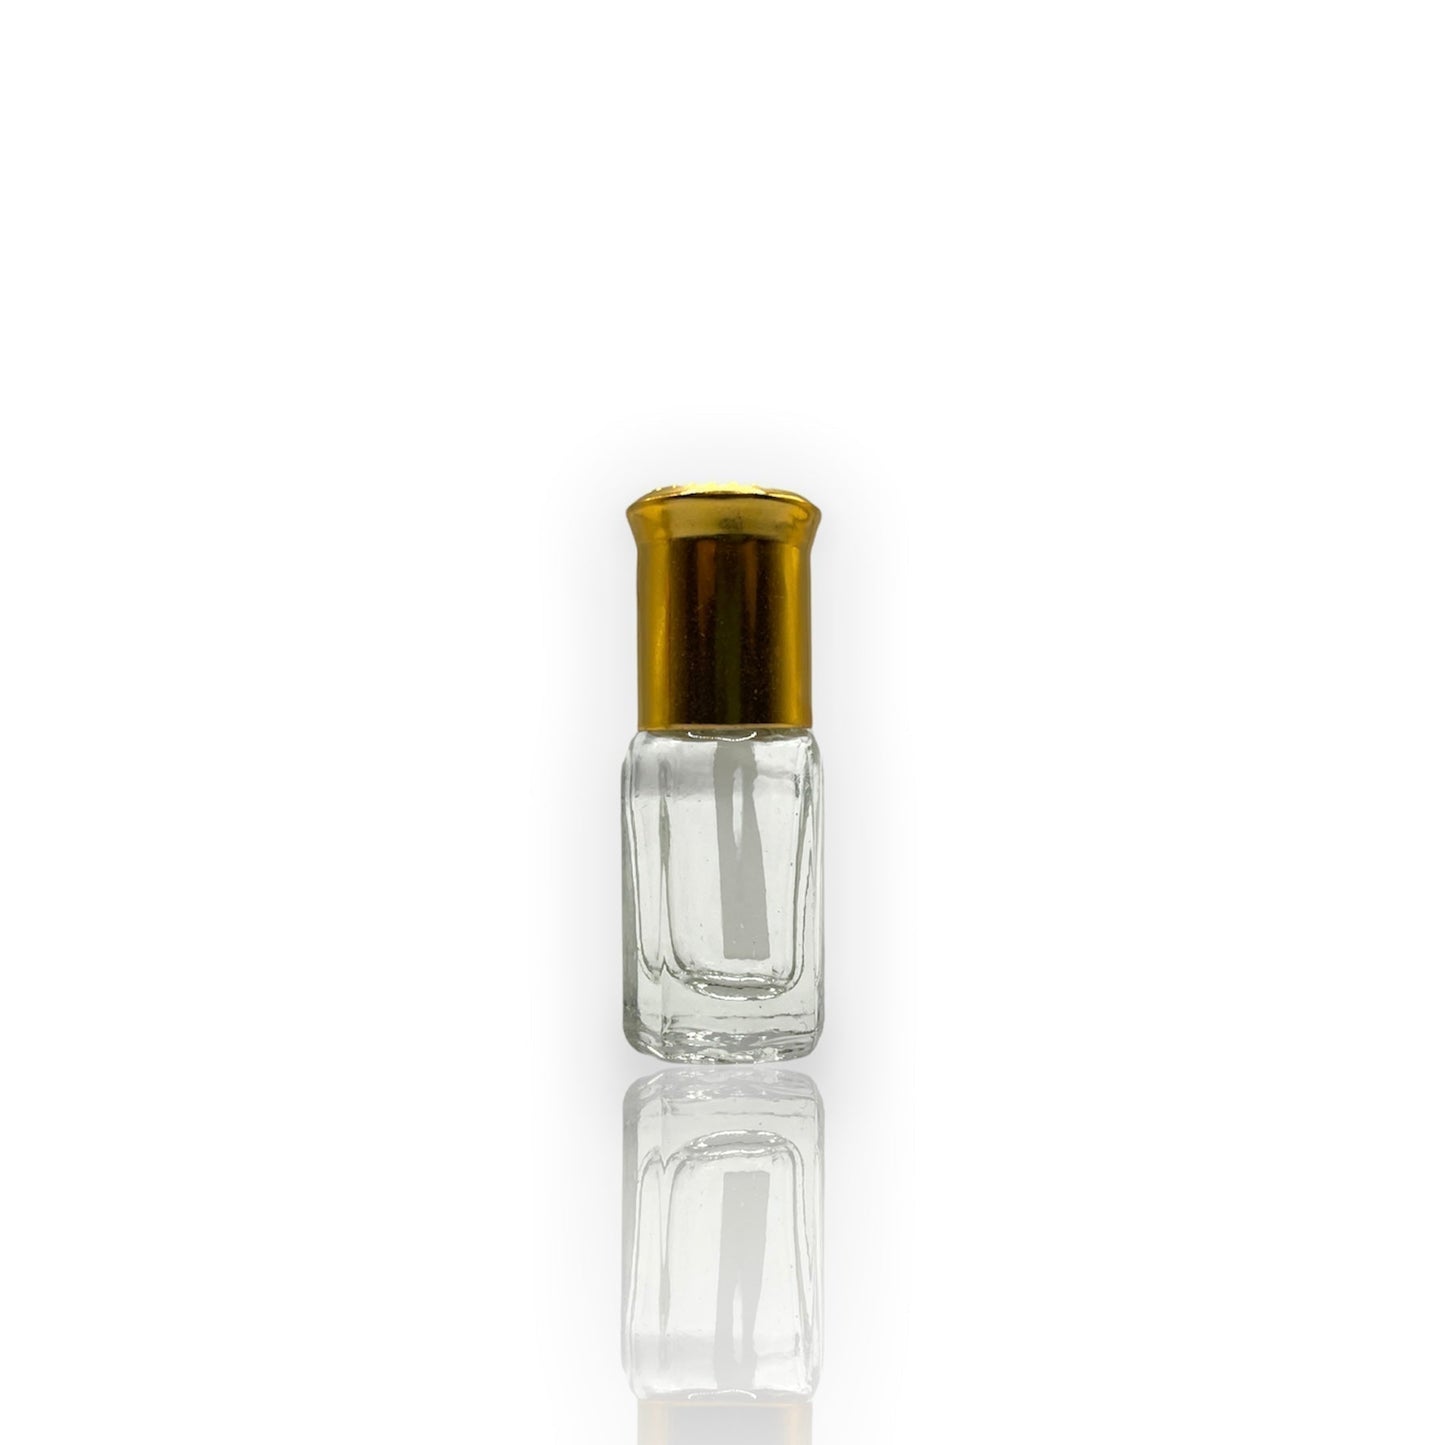 M-14 Öl Parfüm *Inspiriert Von Coolwater